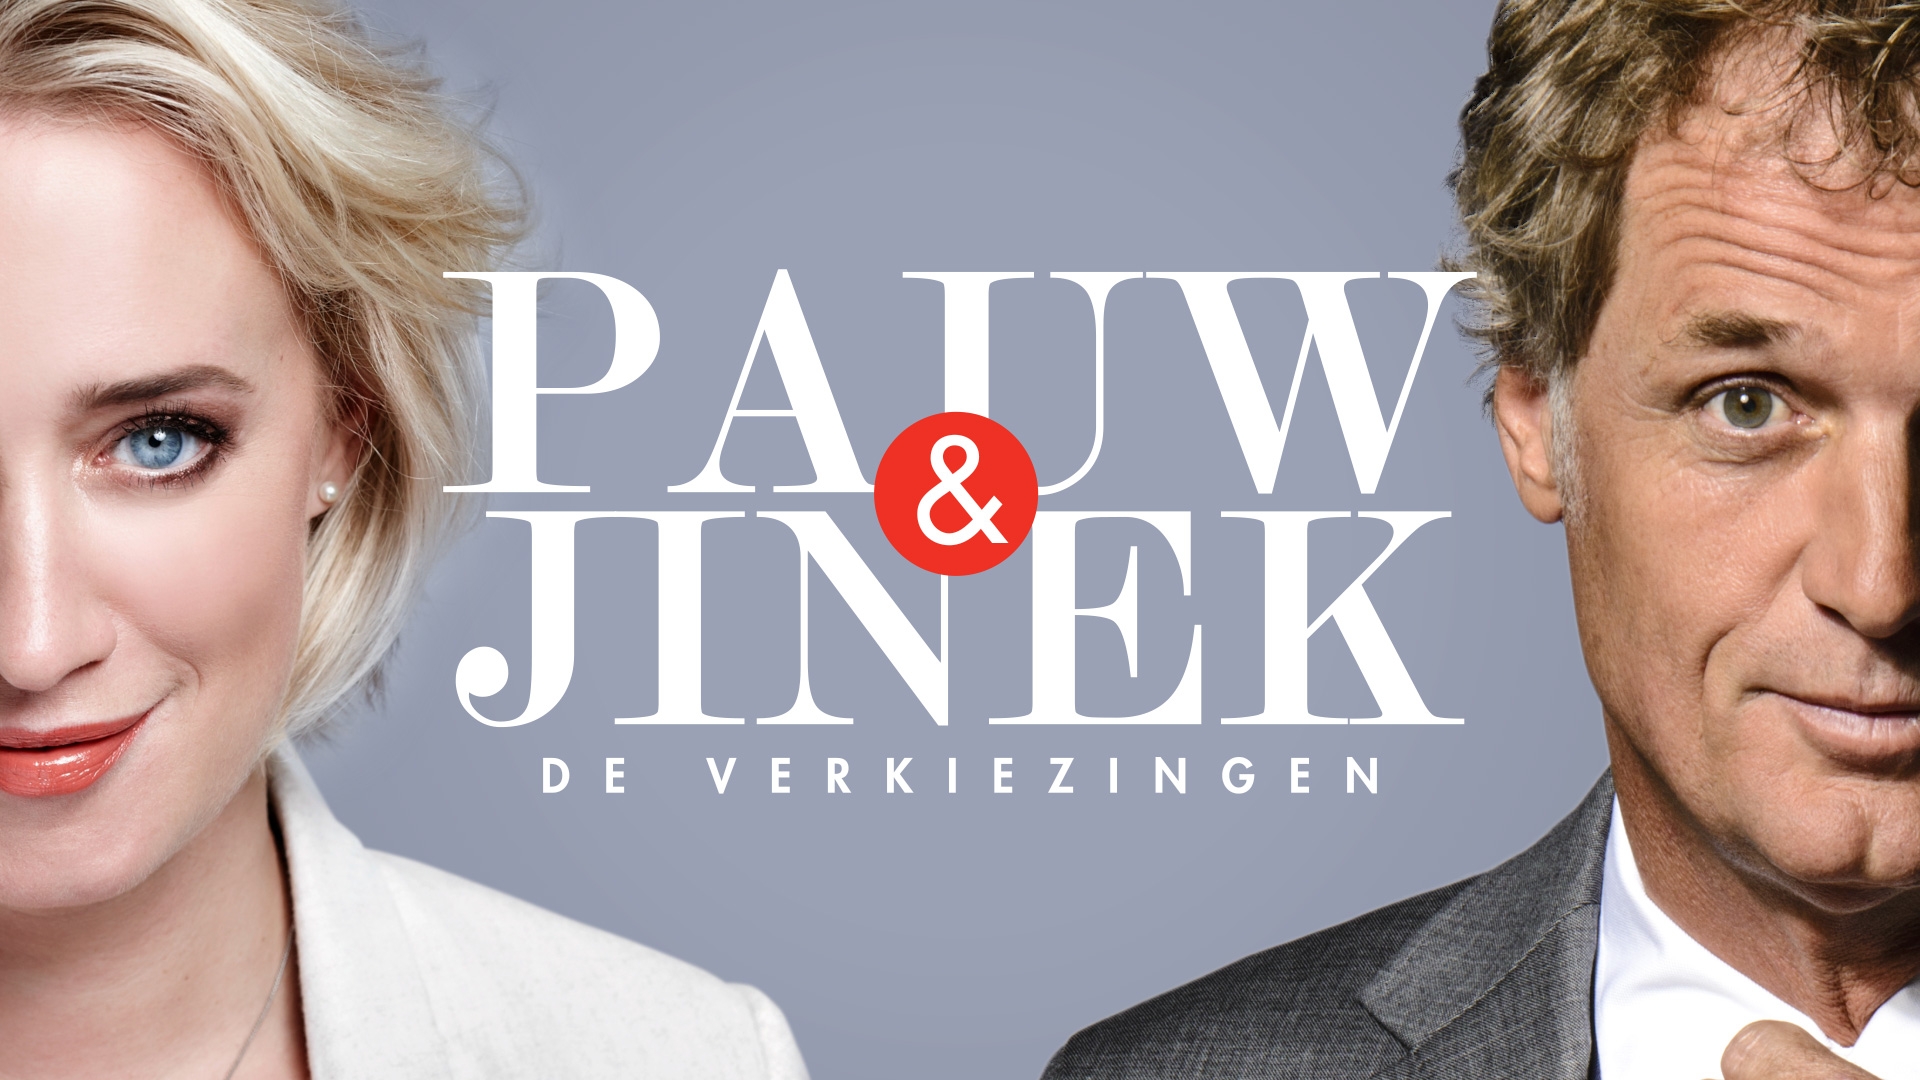 PAUW & JINEK Titelkaart